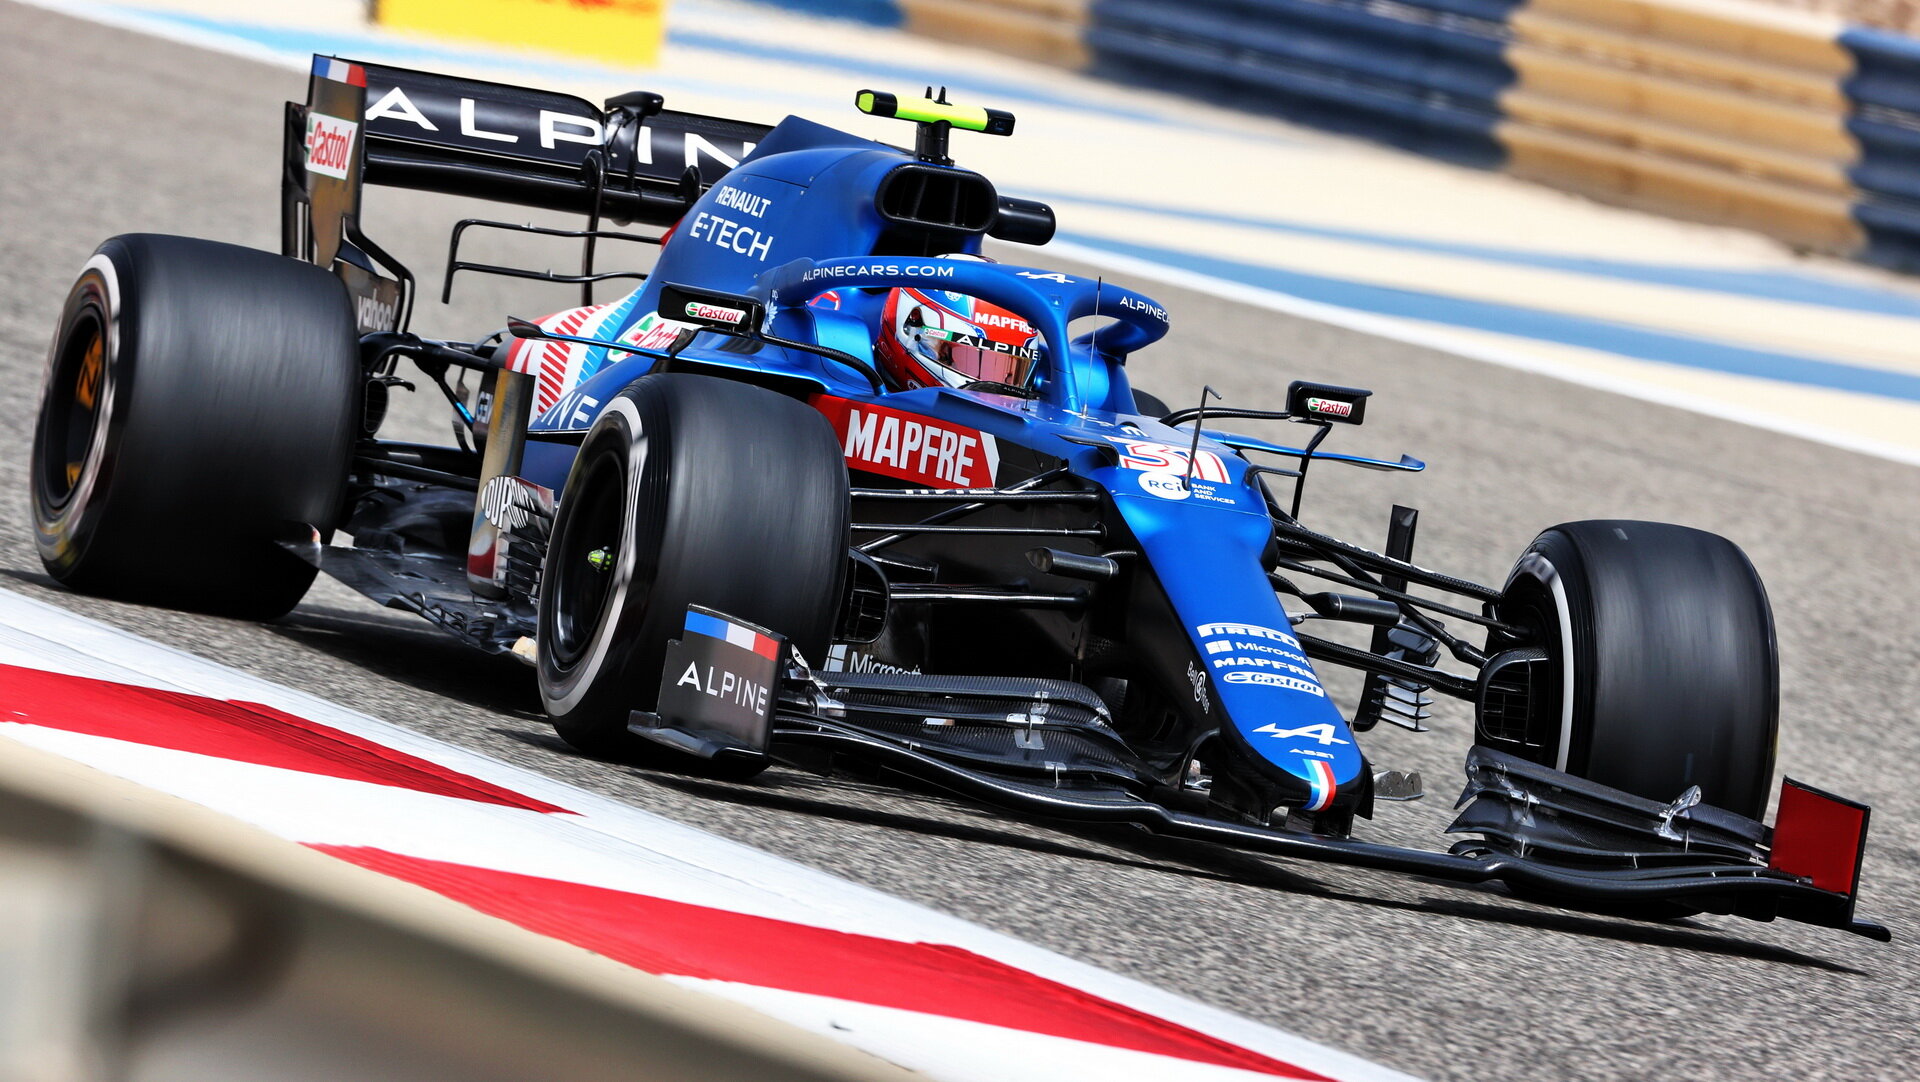 Esteban Ocon - první předsezonní testy v Bahrajnu